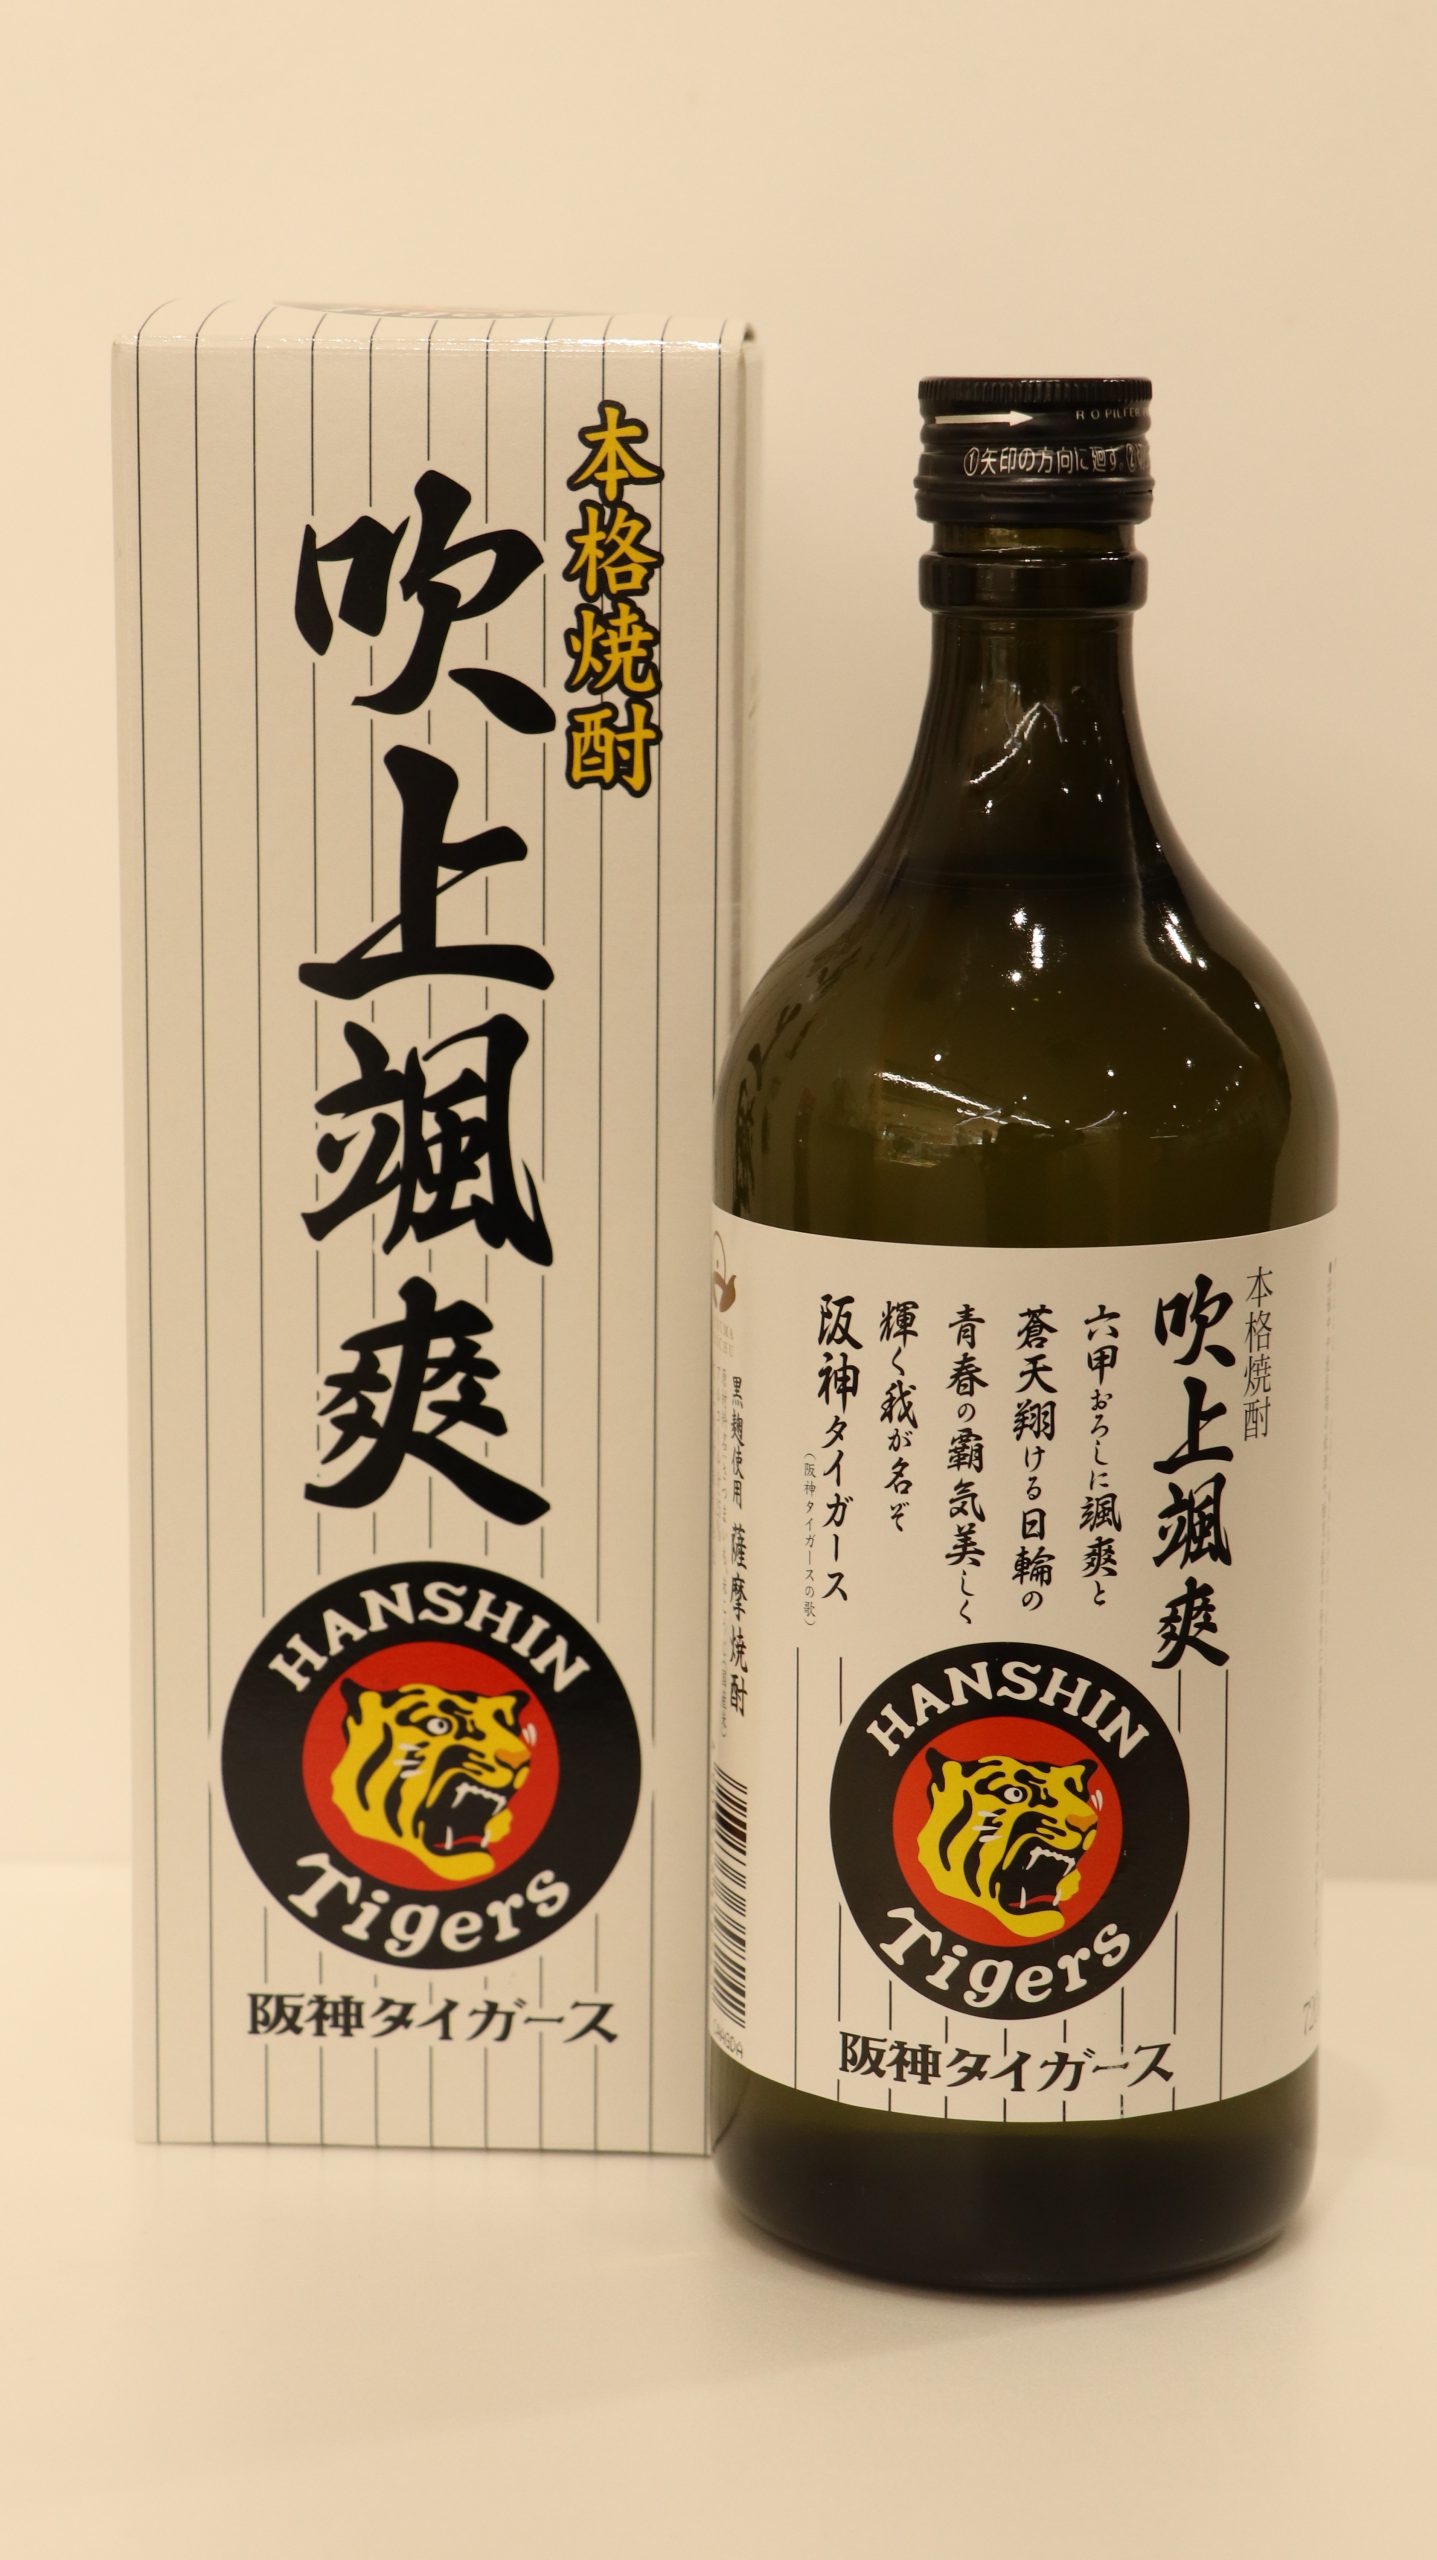 阪神タイガース 樽酒 300ml 日本酒 リーグ優勝 - 酒